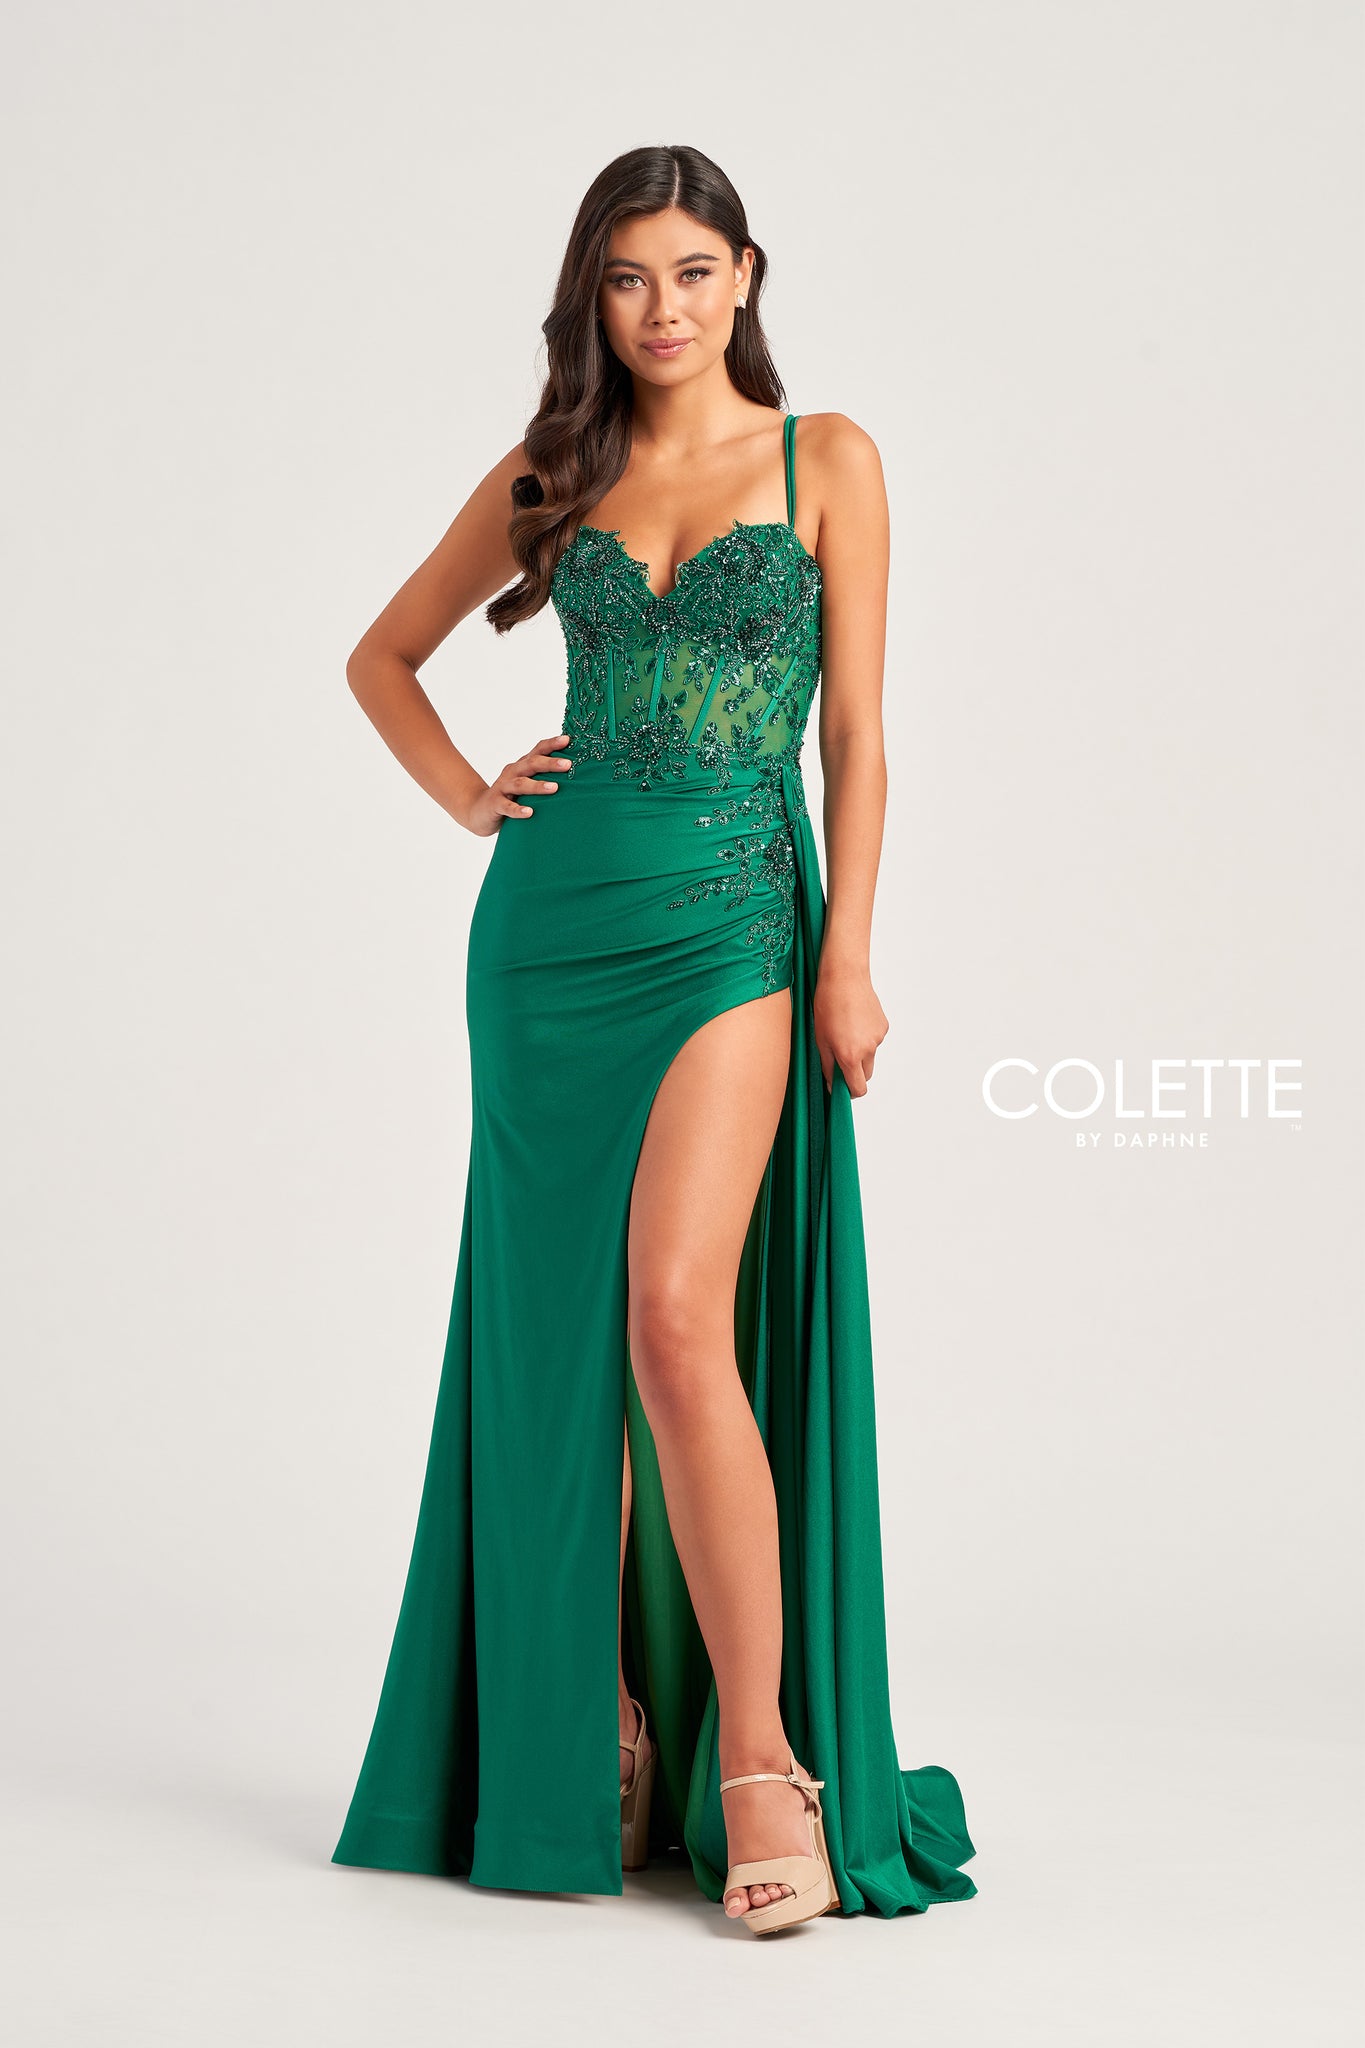 Colette CL5138